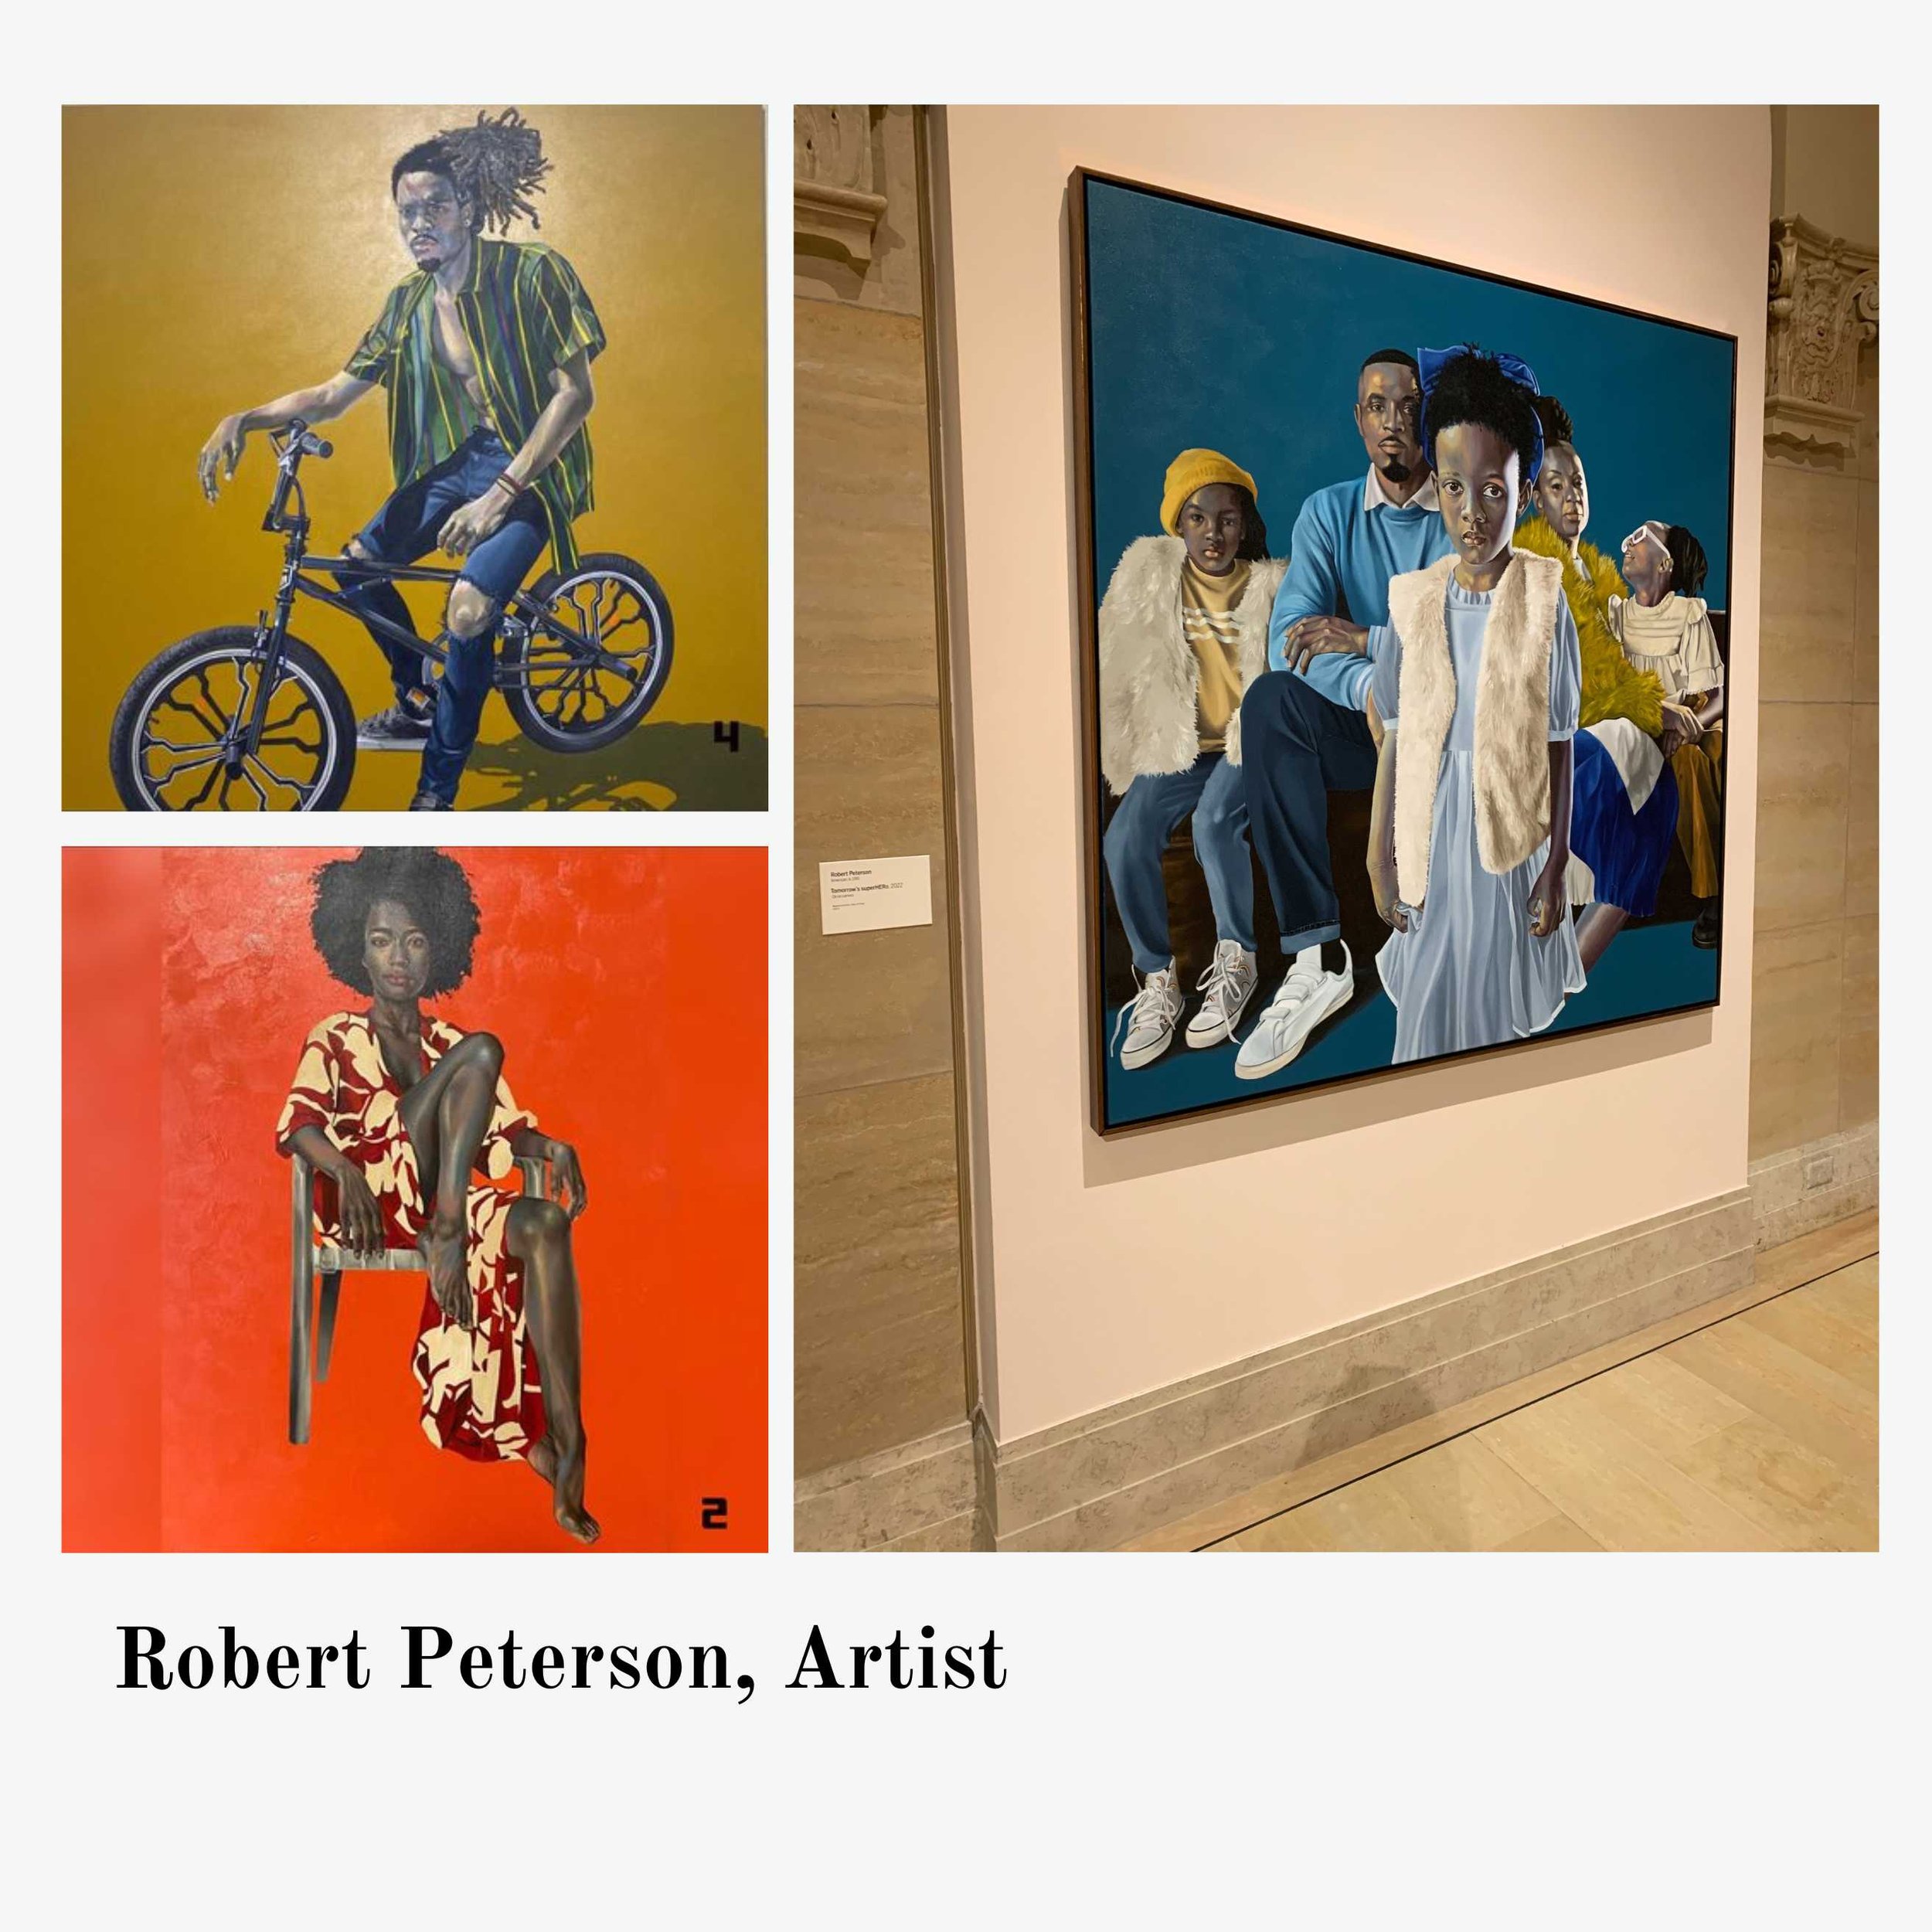 Robert Peterson, Artist (1).jpg